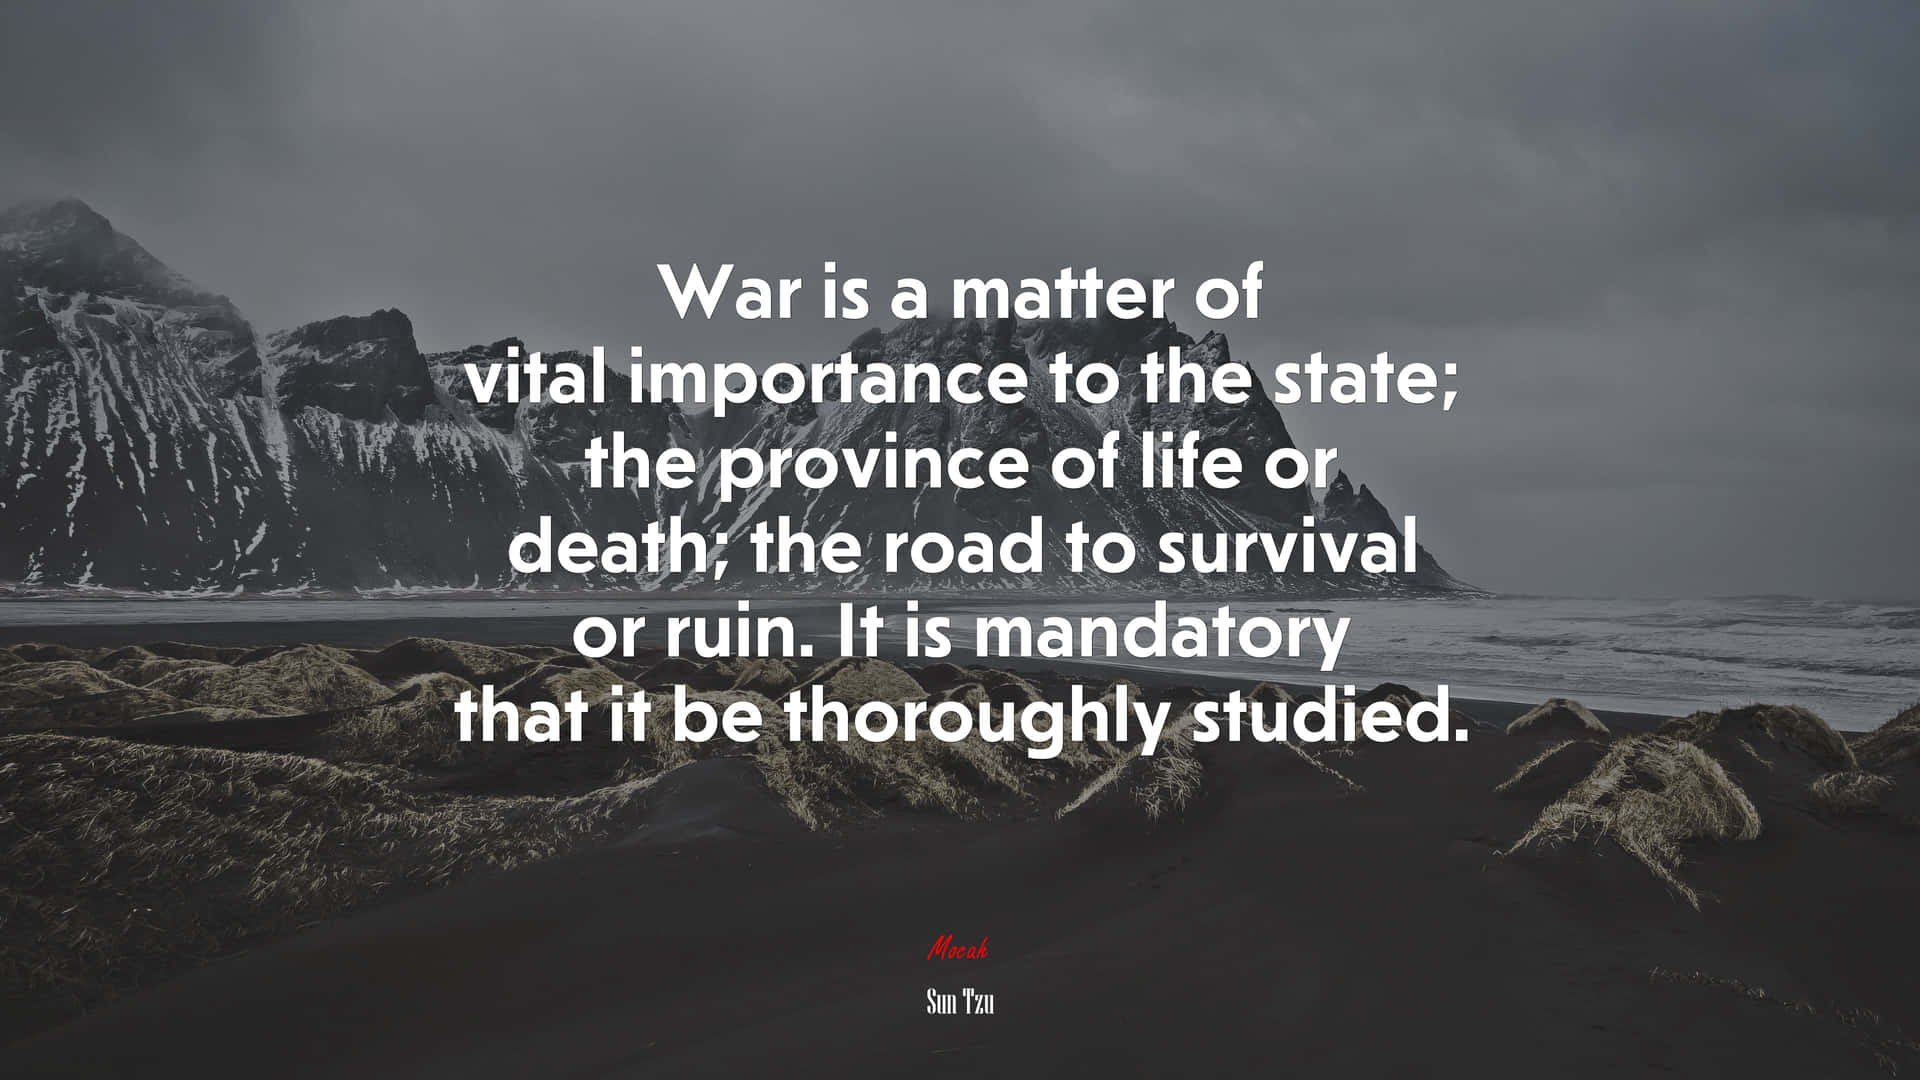 Mandatory Studyof War Quote Wallpaper